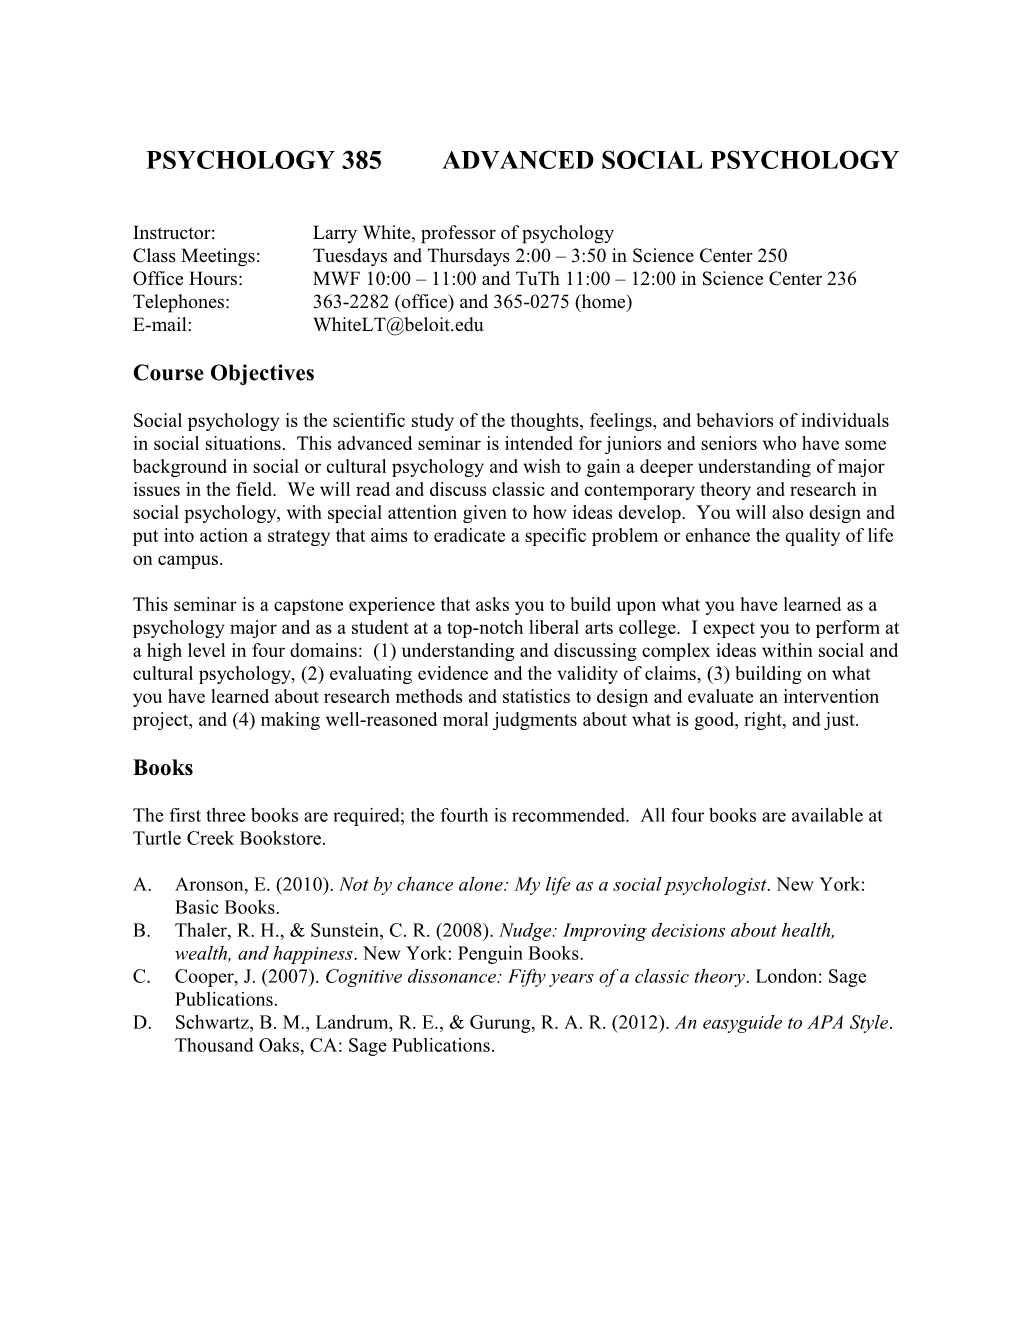 Psychology 264 Applied Social Psychology